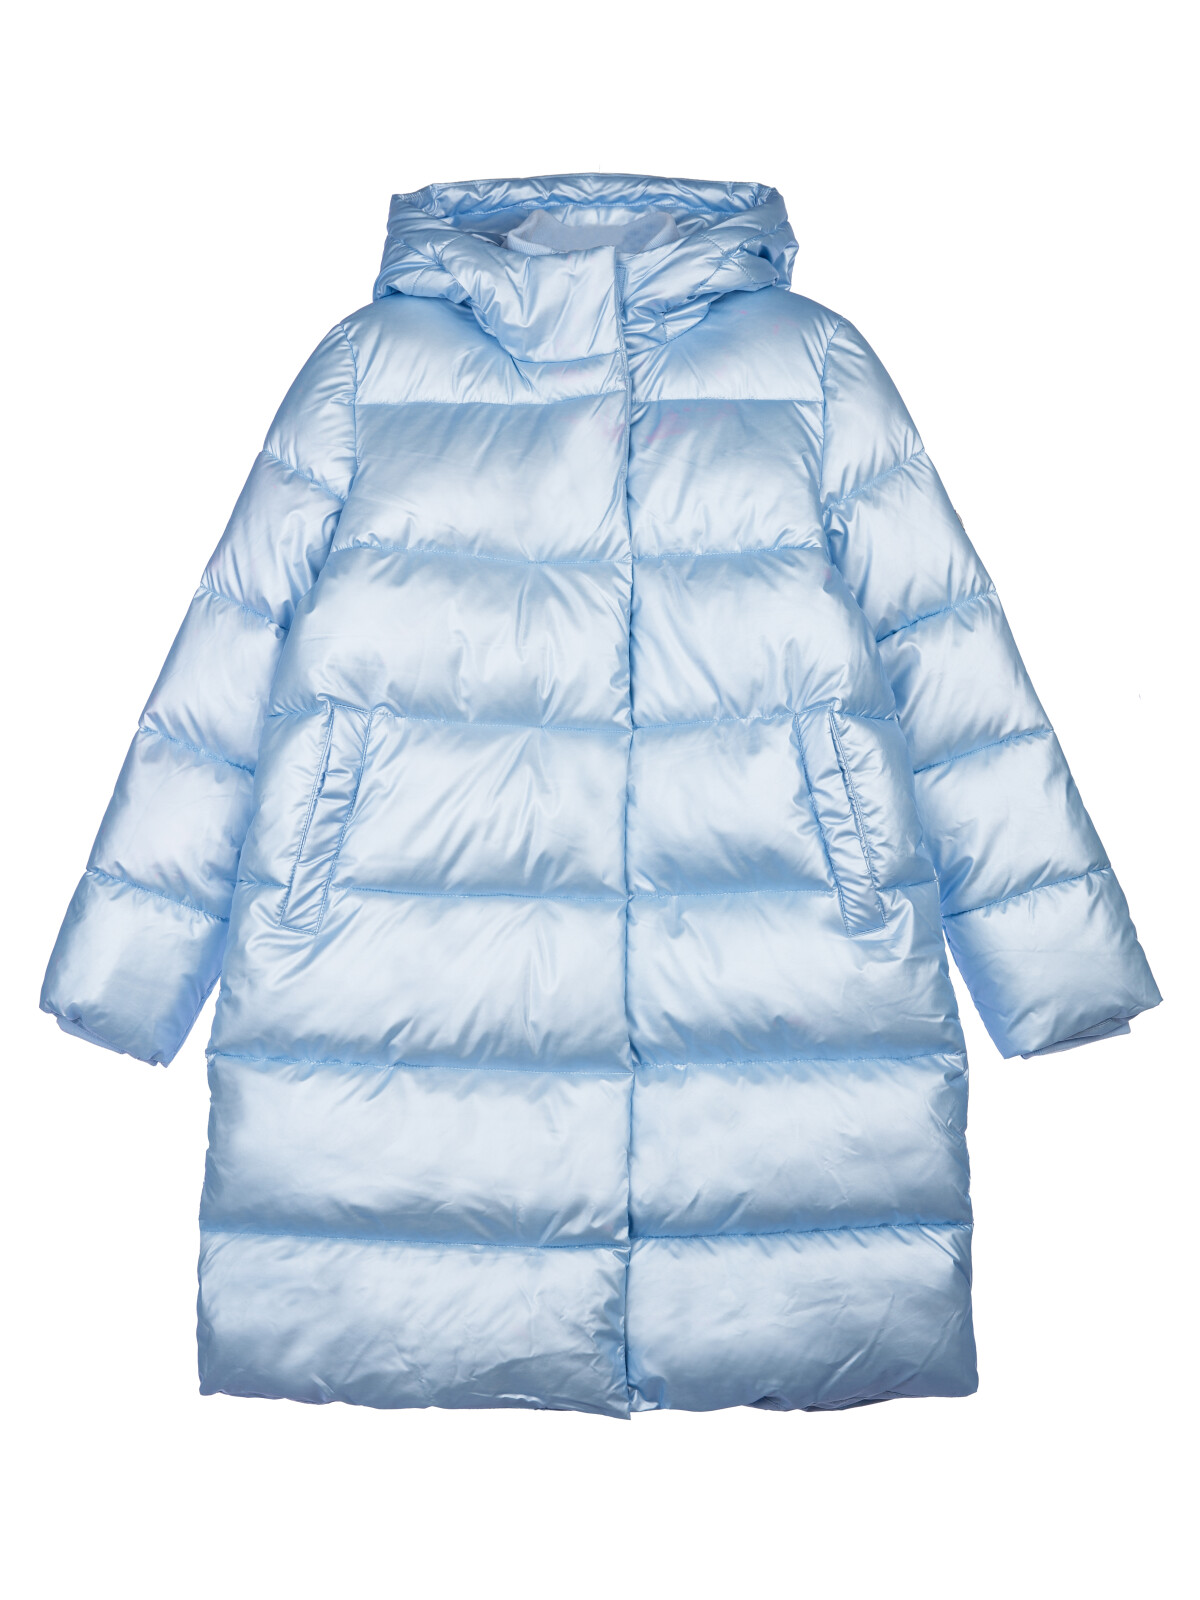 Пальто текстильное с полиуретановым покрытием для девочек PlayToday, голубой, 146